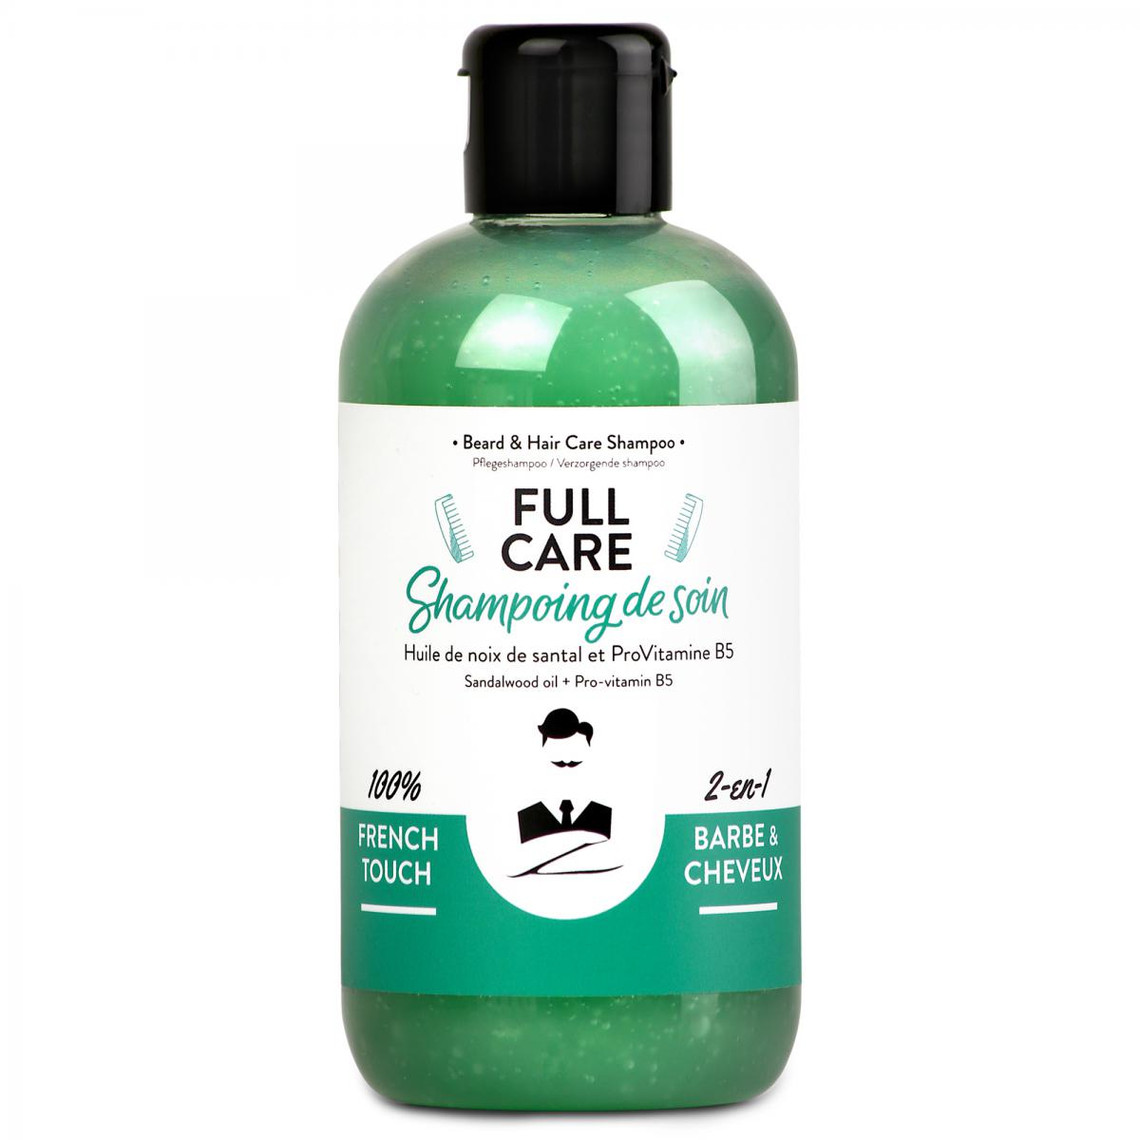 Shampoing naturel 2-en-1 barbe et cheveux Full Care (santal et pro-vitamine B5)